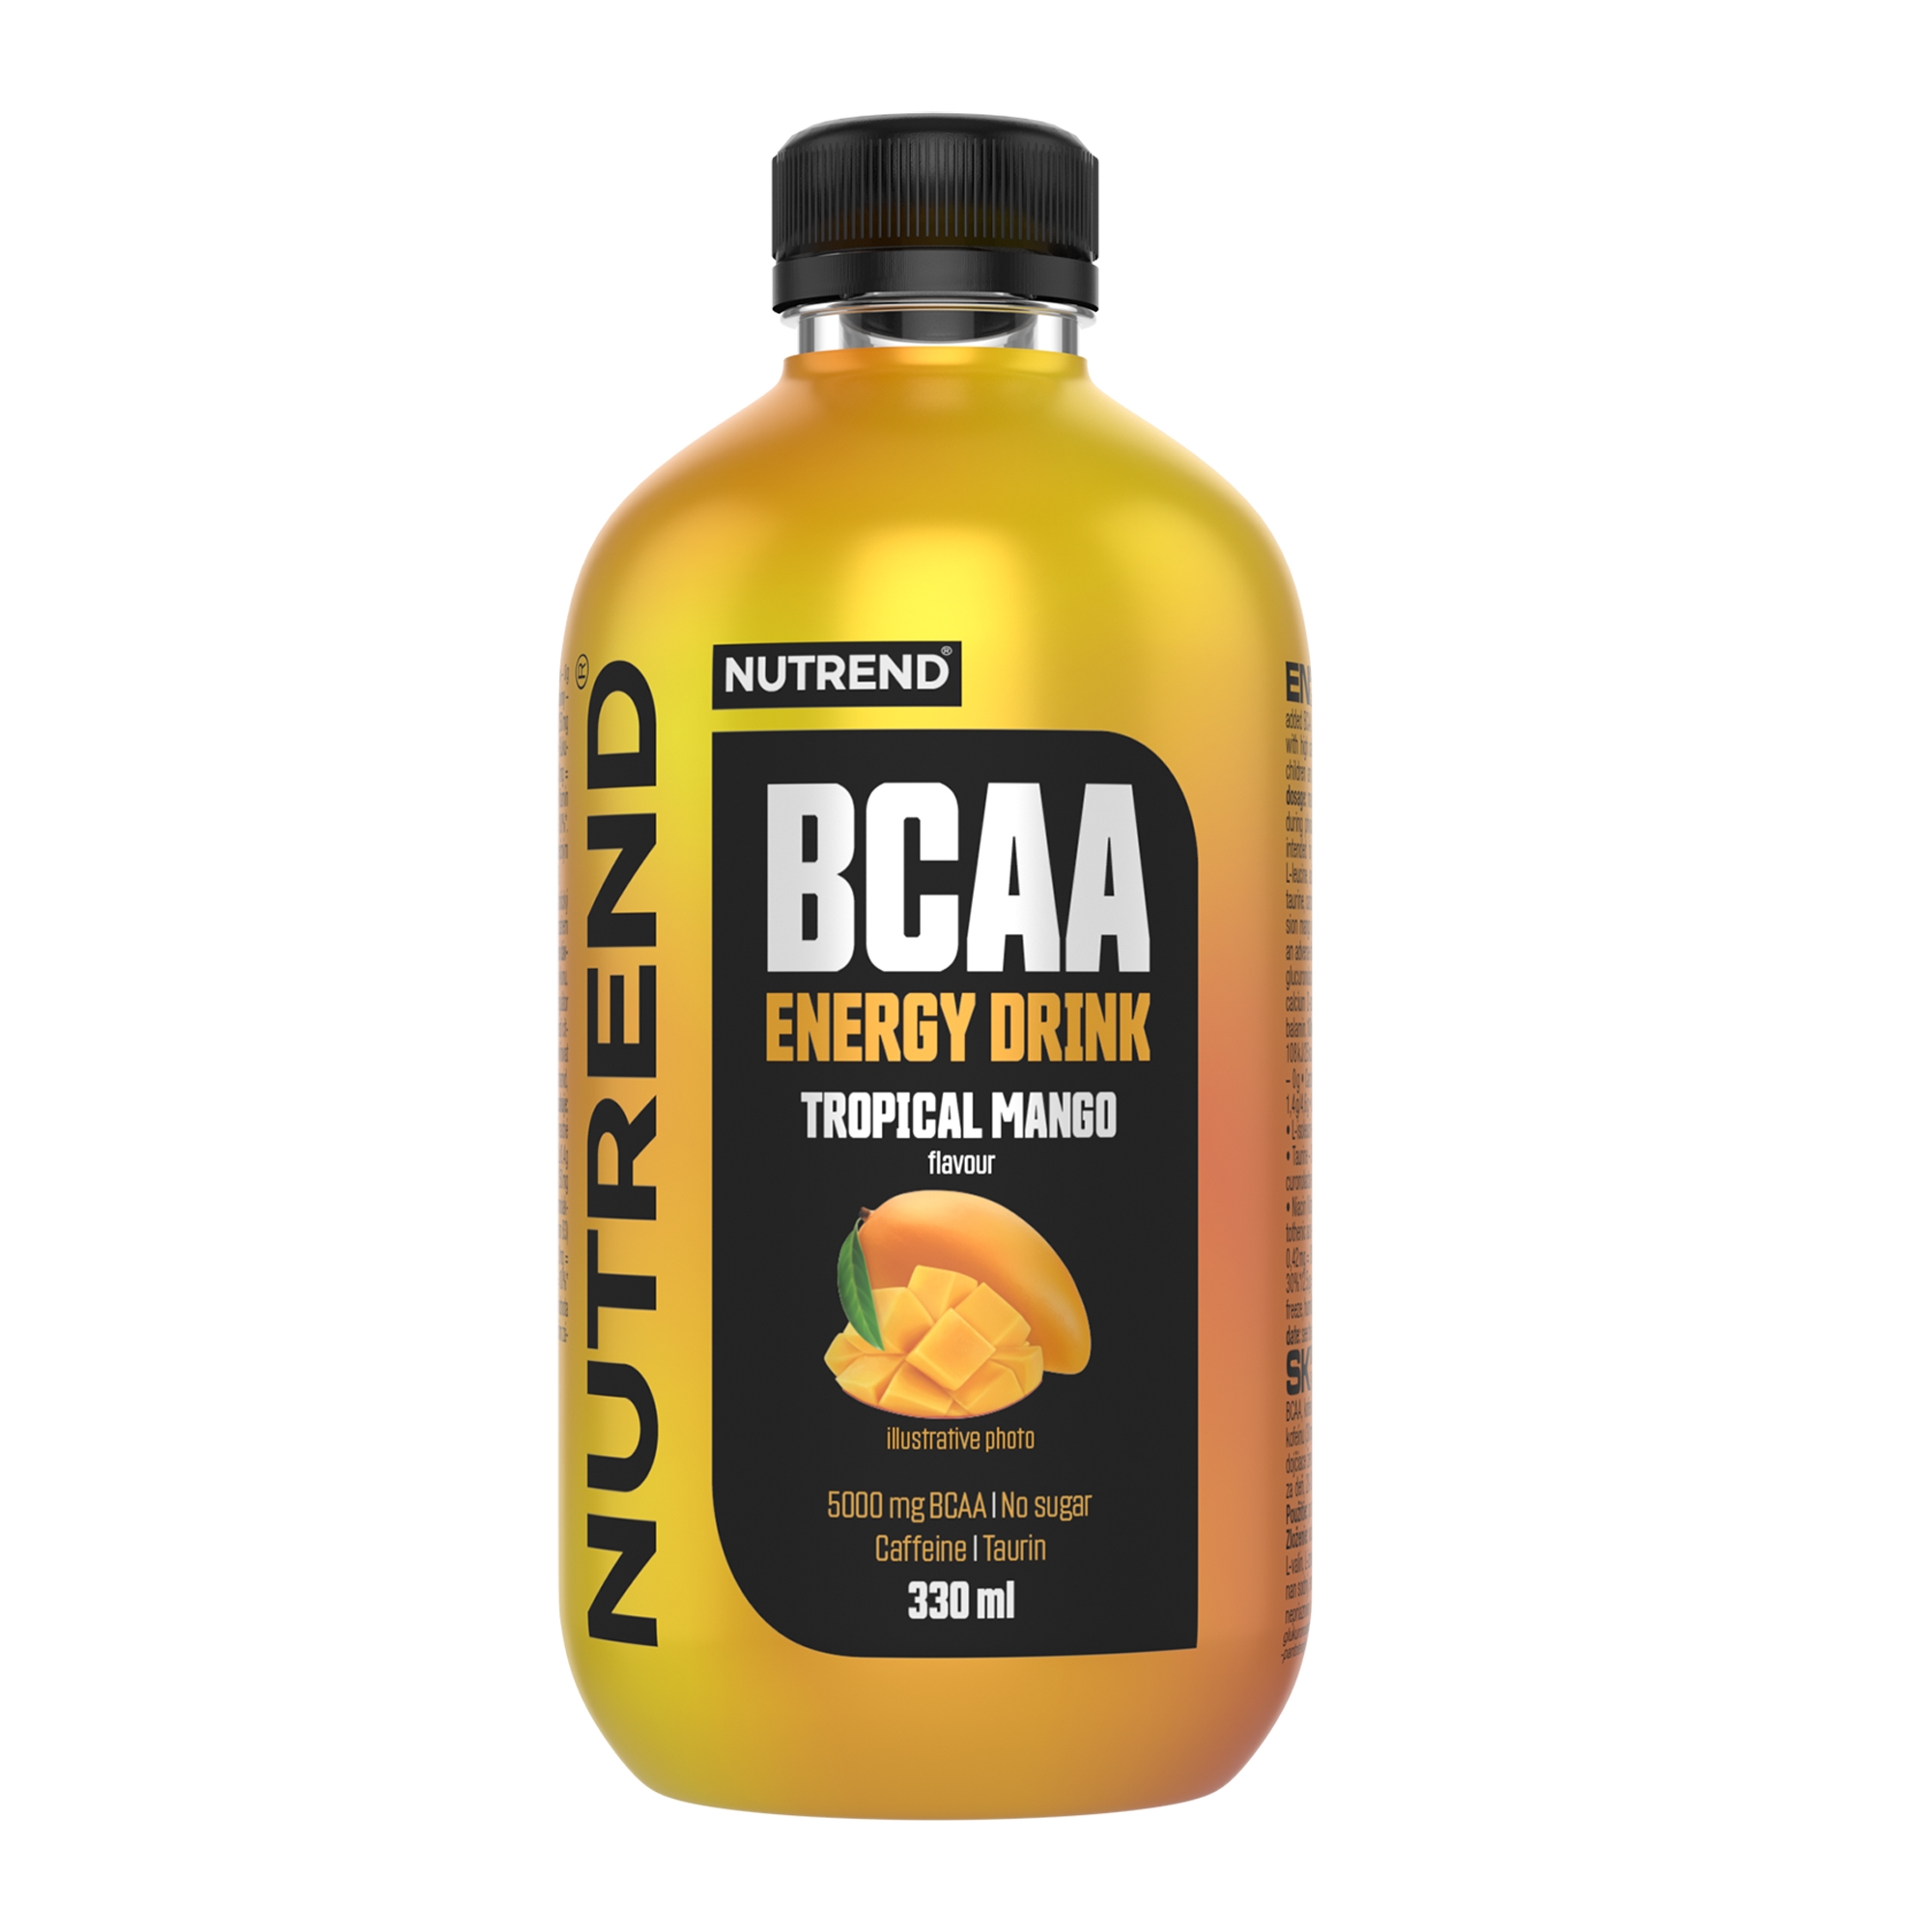 NUTREND BCAA Energy Drink, 330 ml tropical mango Typ: nápoje, určení: doplnění energie, použití: před výkonem